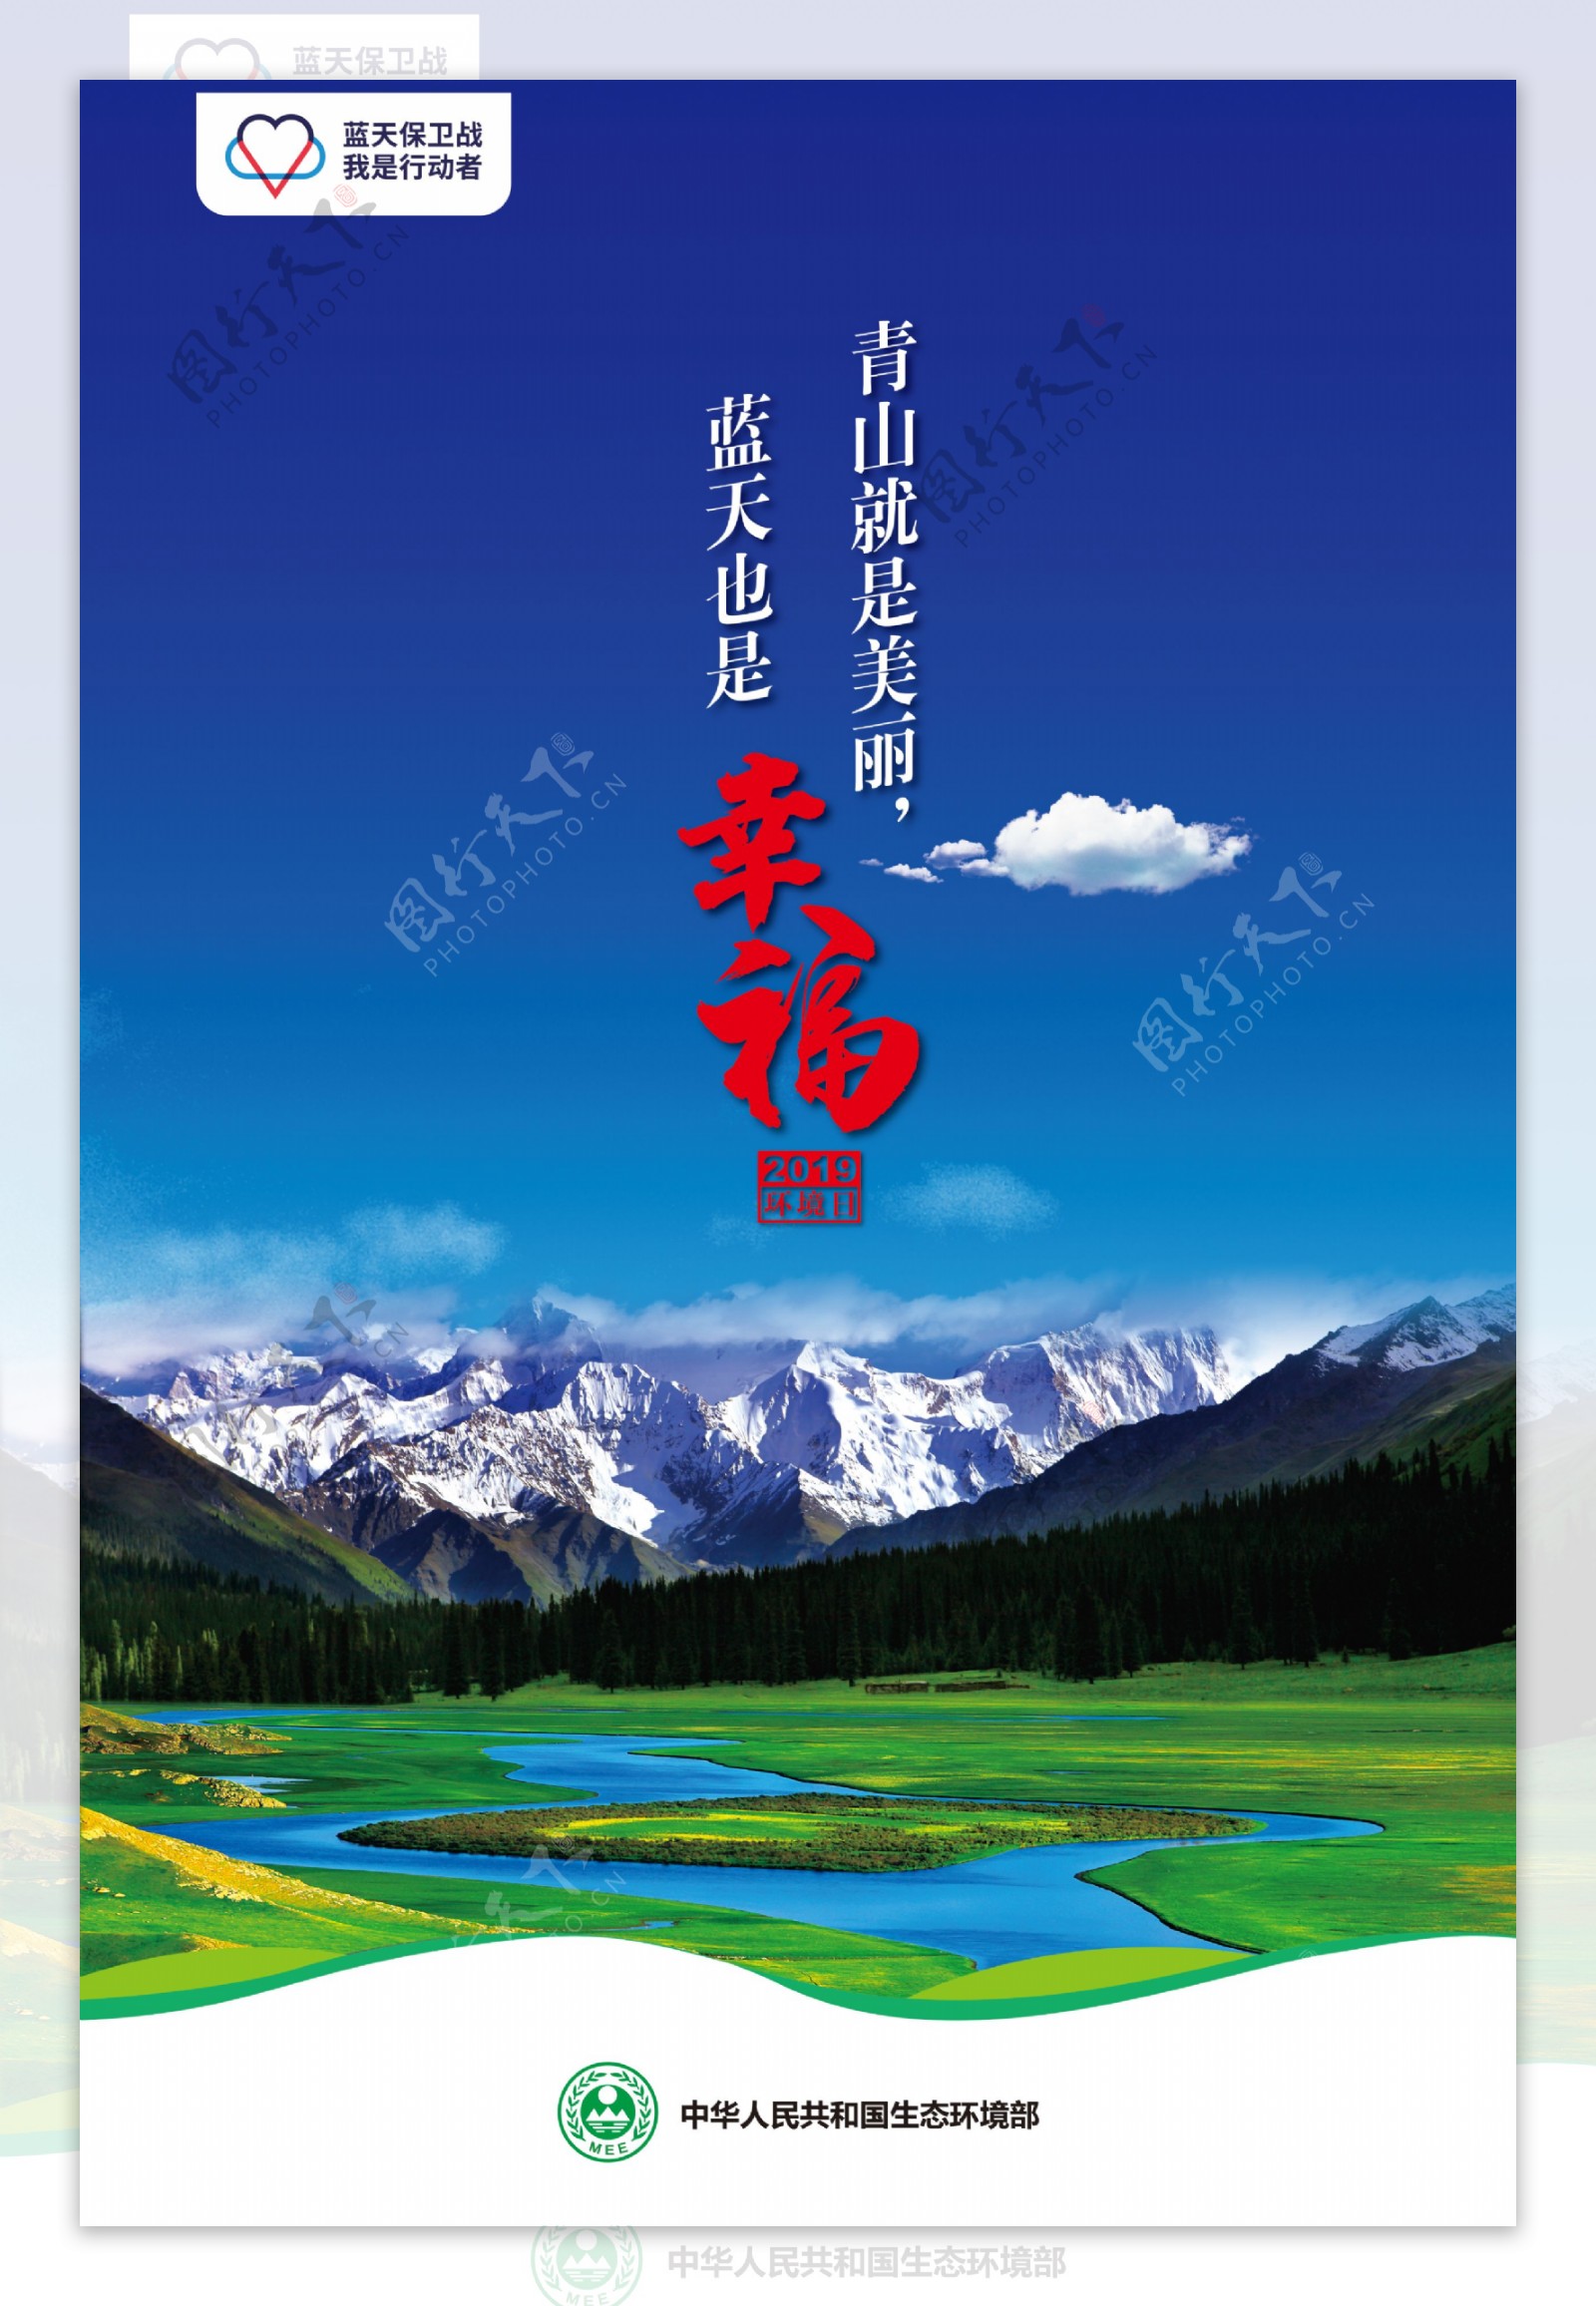 2019世界环境日中国宣传海报